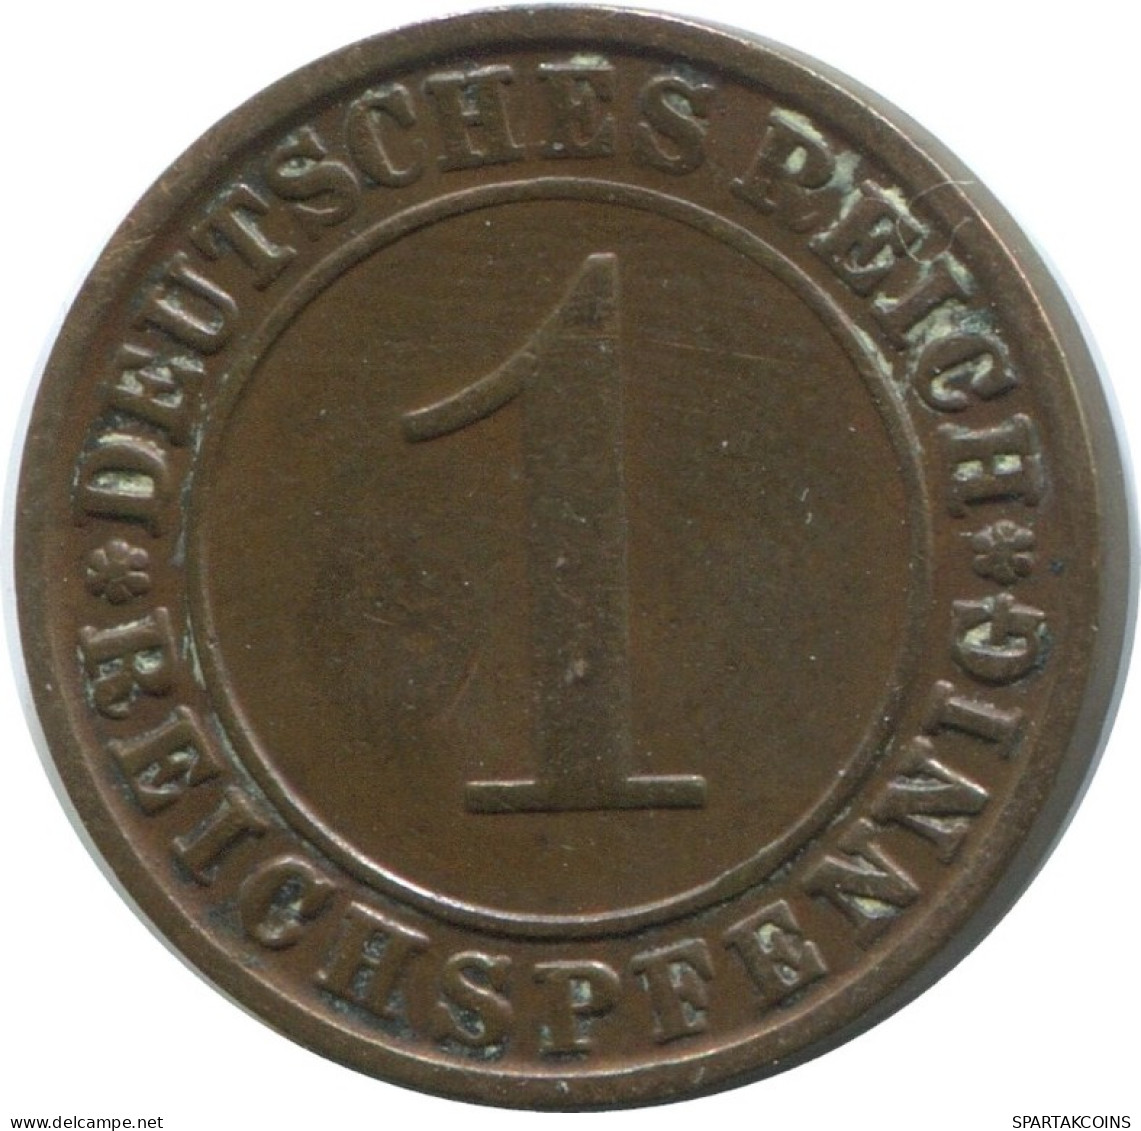 1 REICHSPFENNIG 1924 G ALEMANIA Moneda GERMANY #AD431.9.E.A - 1 Rentenpfennig & 1 Reichspfennig